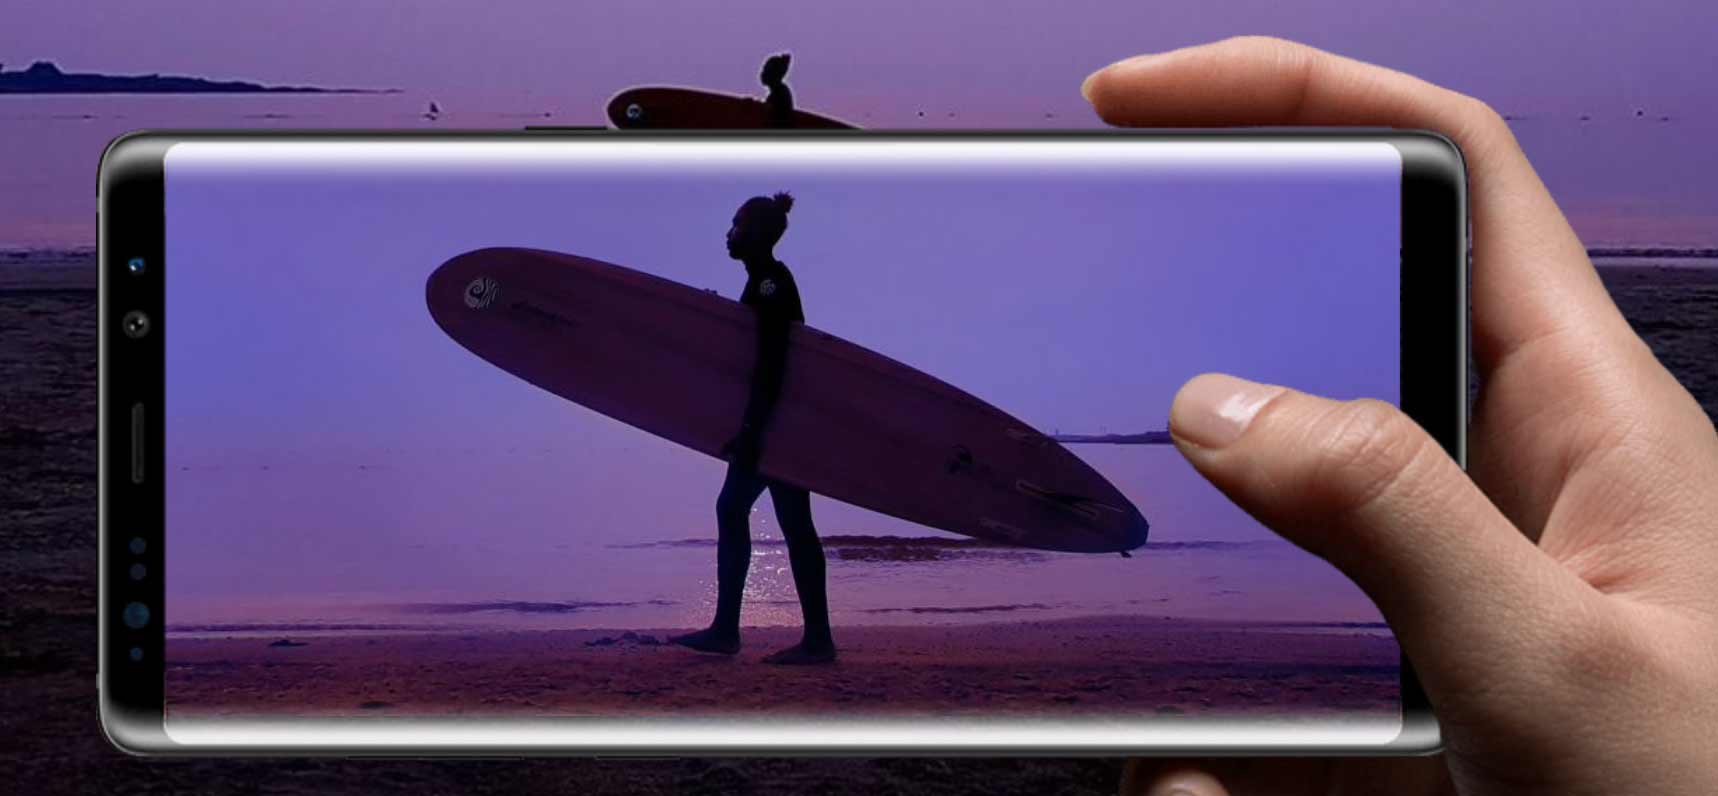 Samsung patenta un lector de huellas en pantalla para el Galaxy Note 9